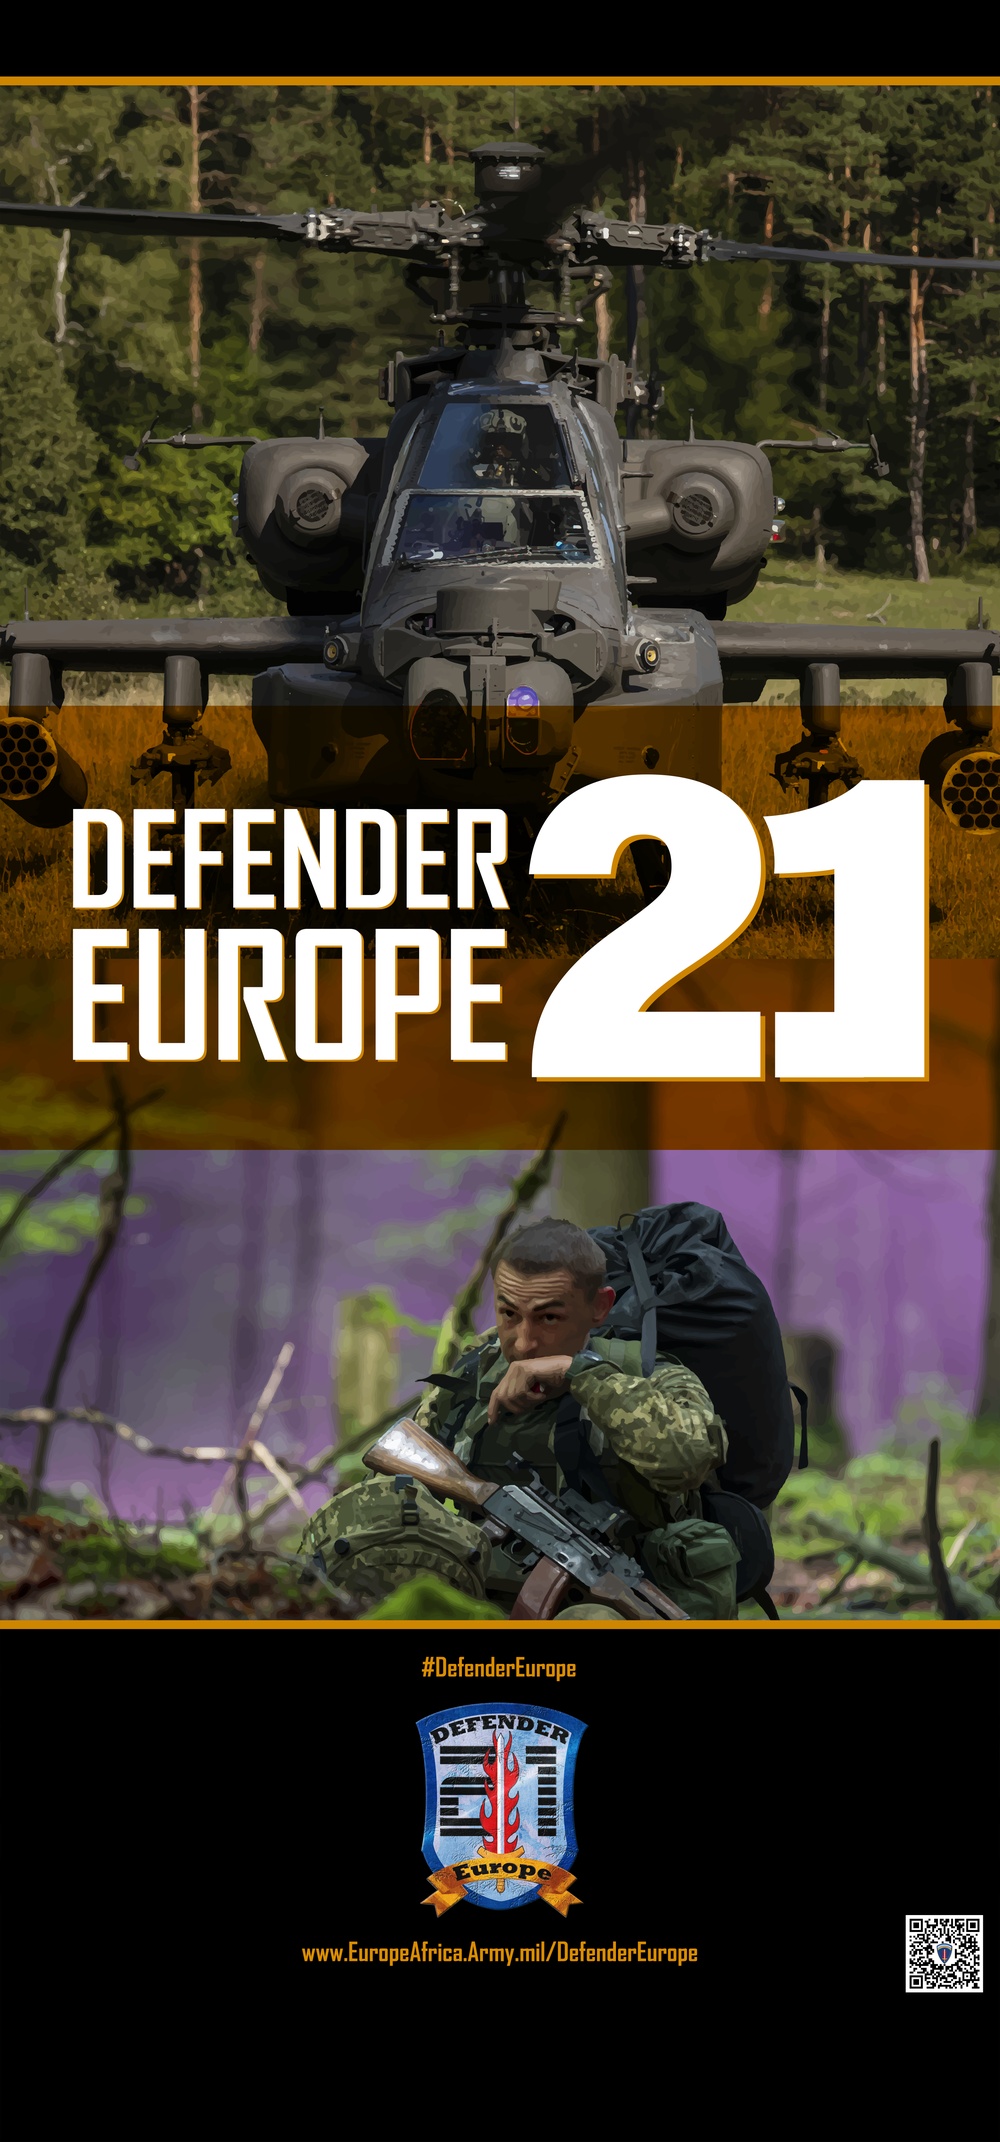 DEFENDER-Europe 21 life-size pop-up poster